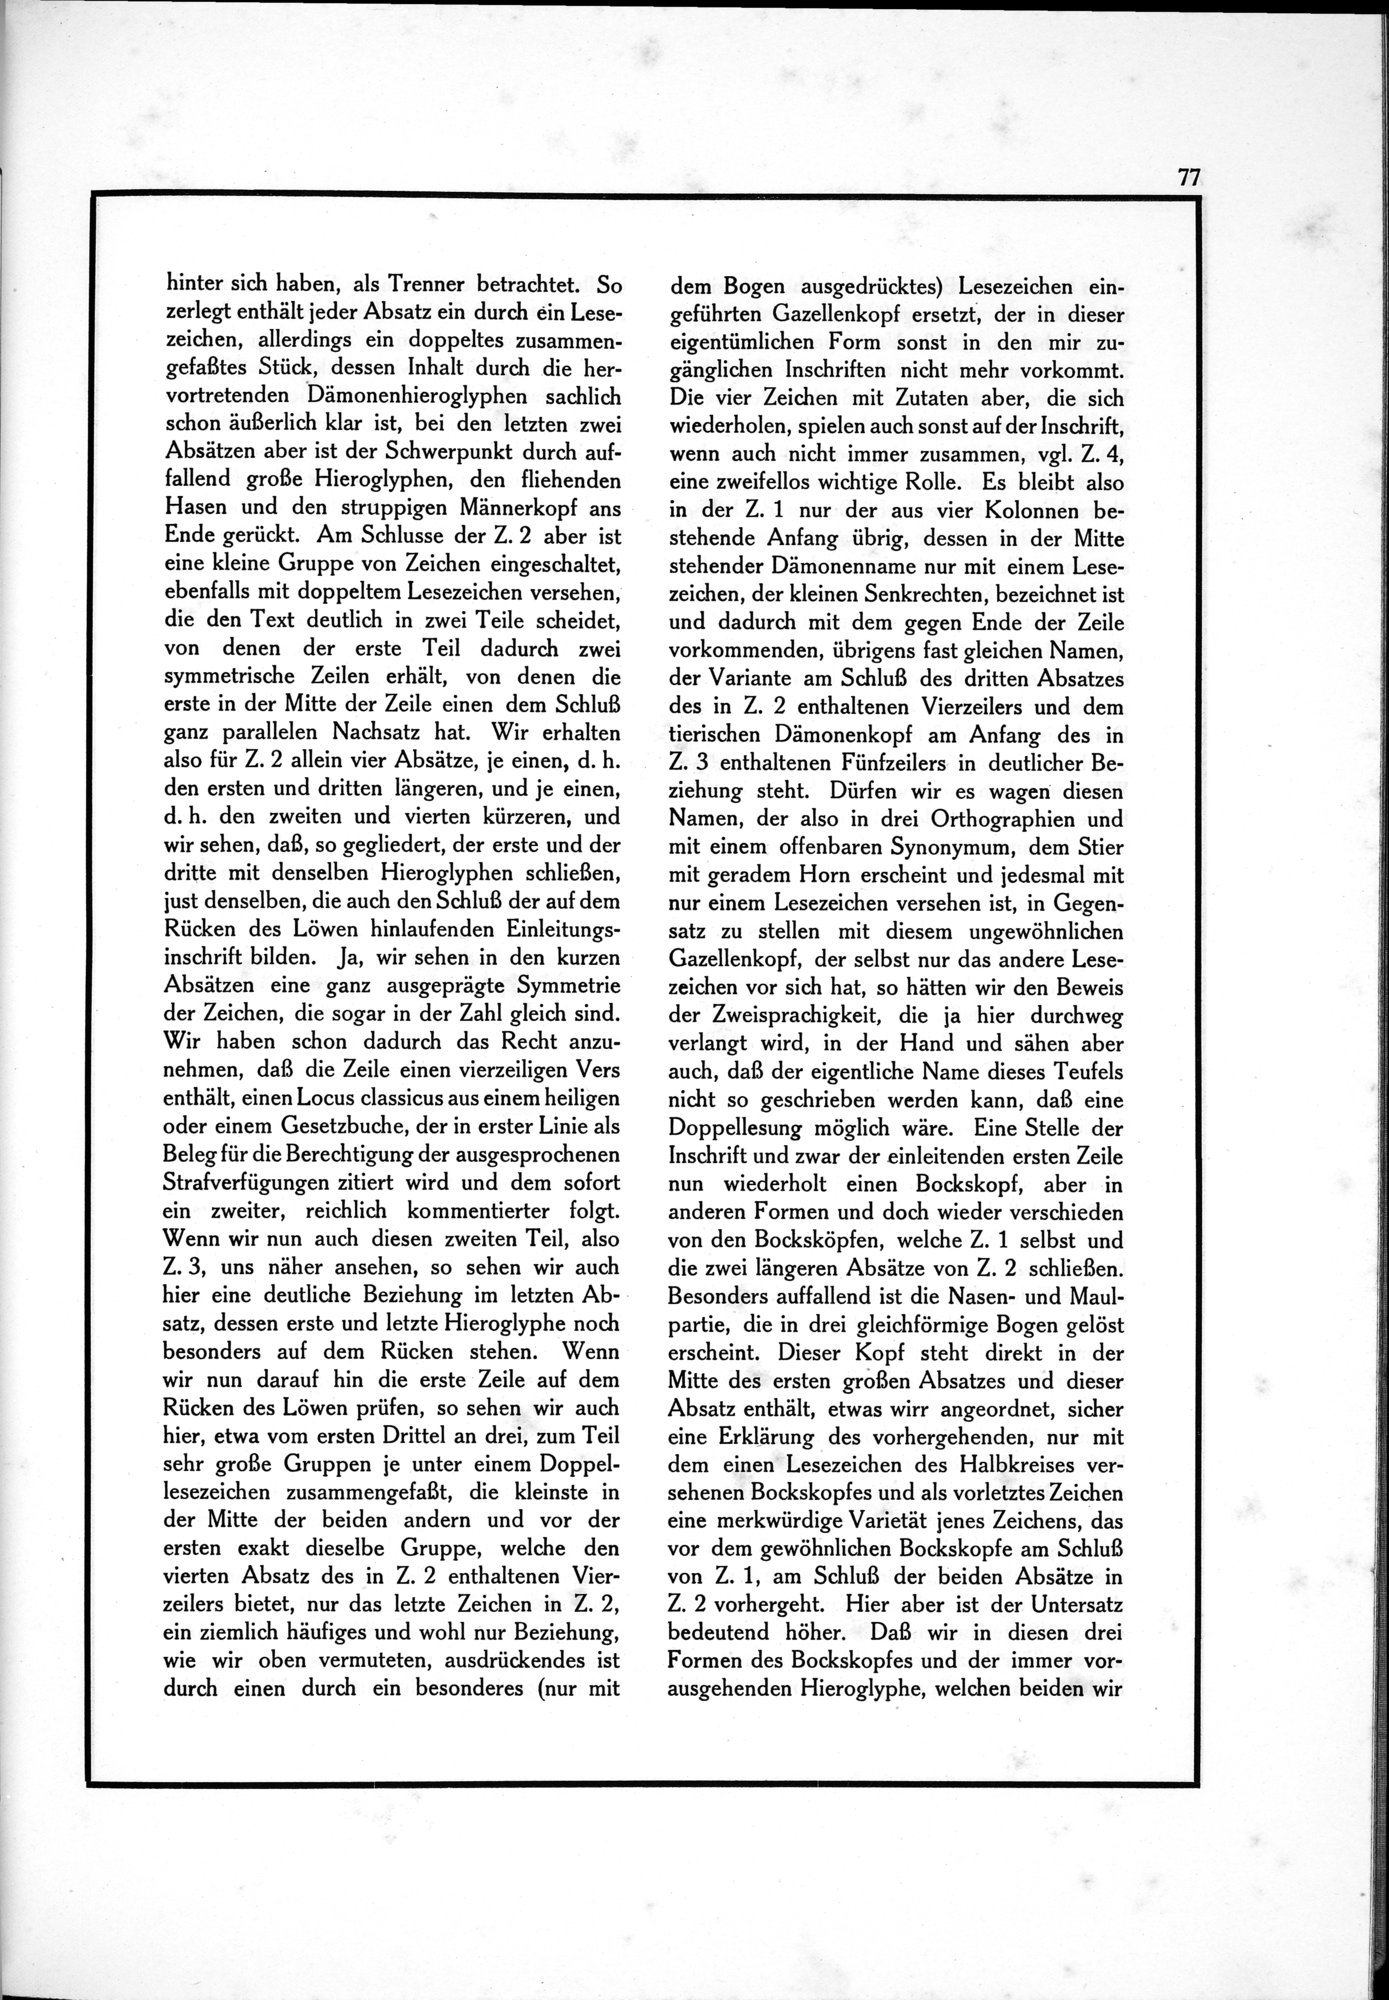 Die Teufel des Avesta und Ihre Beziehungen zur Ikonographie des Buddhismus Zentral-Asiens : vol.1 / Page 81 (Grayscale High Resolution Image)